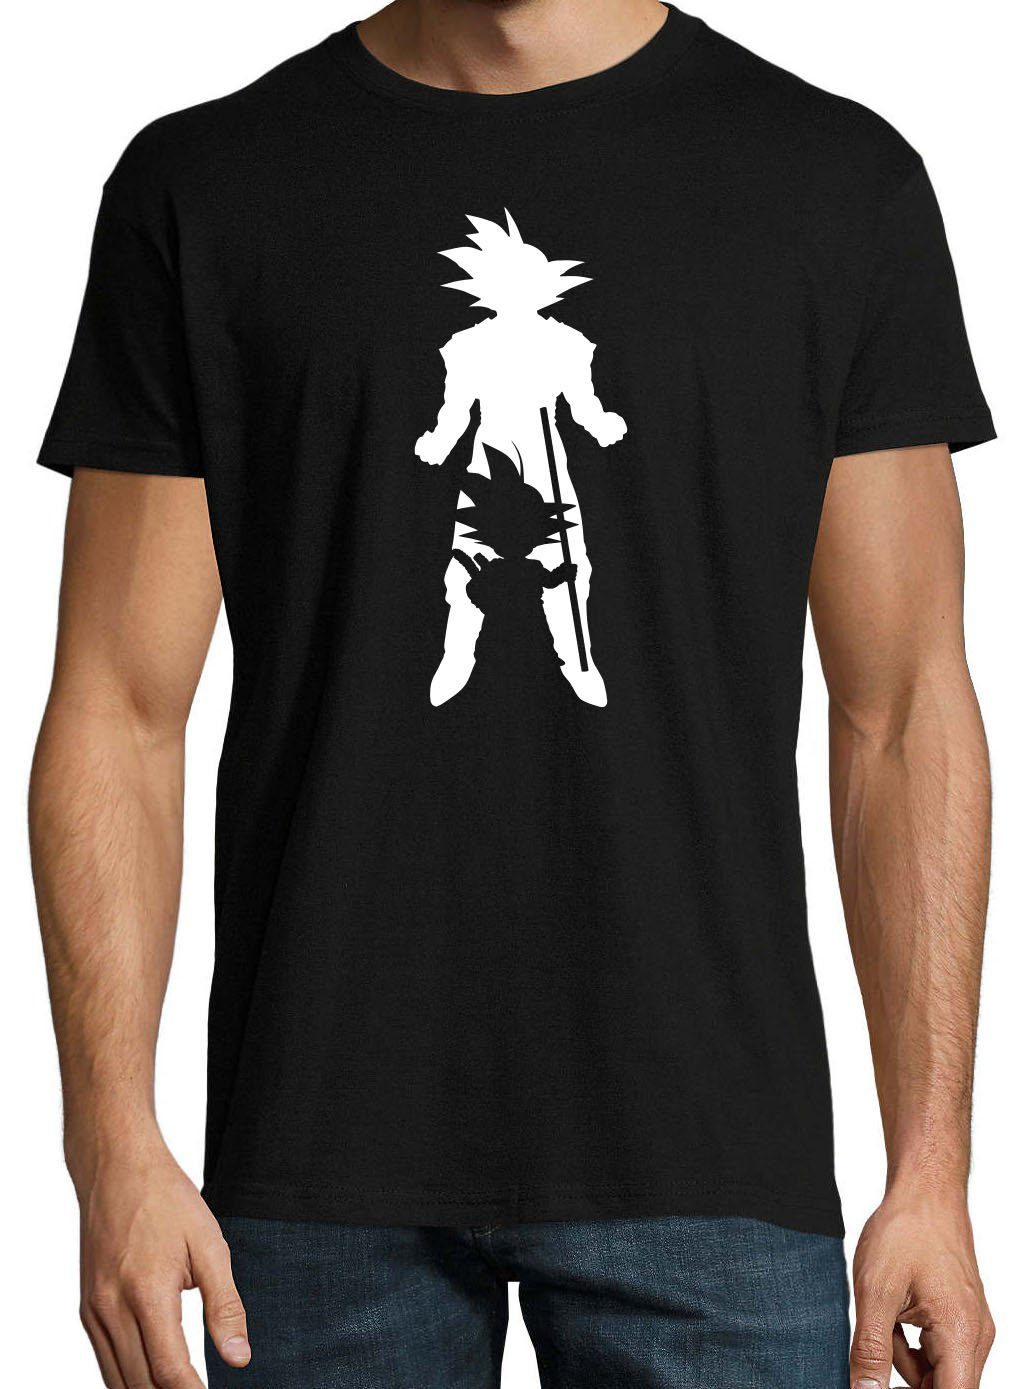 Super trendigem Youth T-Shirt Goku Frontprint mit Herren Shirt Schwarz Designz